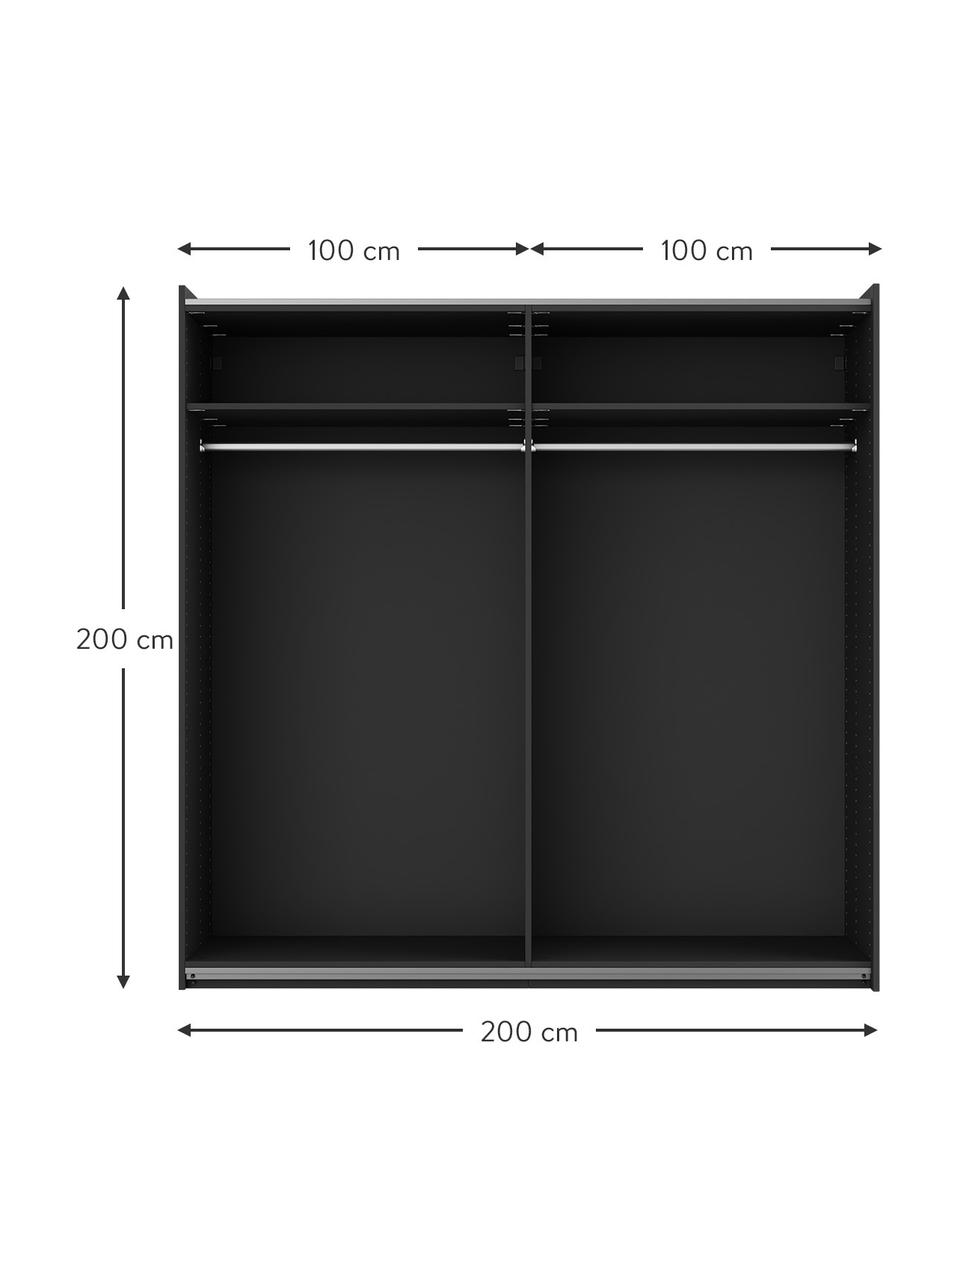 Szafa modułowa z drzwiami przesuwnymi Leon, 200 cm, różne warianty, Korpus: płyta wiórowa z certyfika, Czarny, S 200 x W 200 cm, Basic